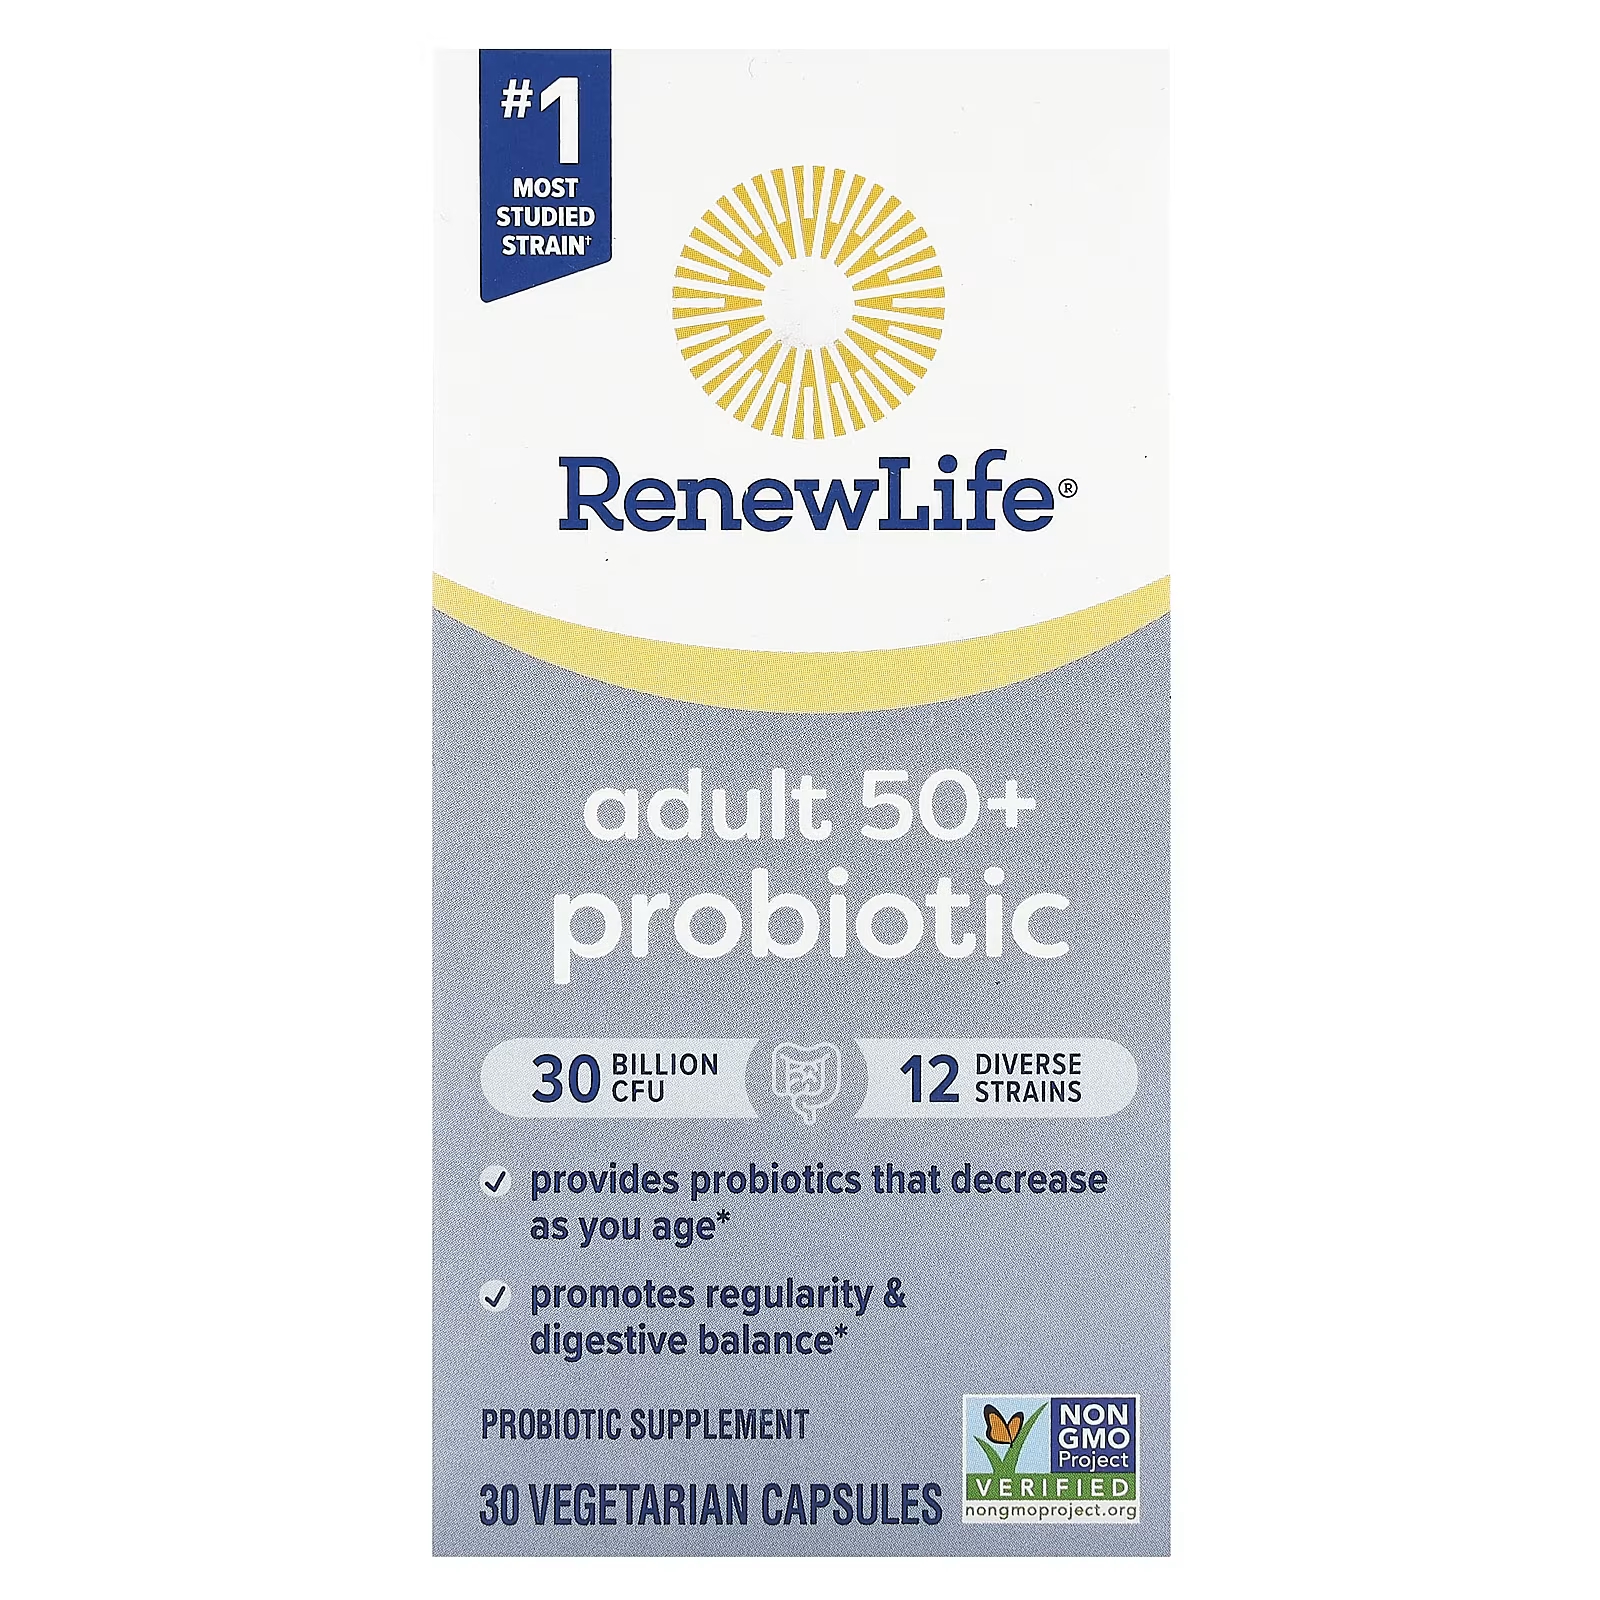 Пробиотик для взрослых старше 50 лет Renew Life 30 млрд КОЕ, 30 вегетарианских капсул пробиотик для взрослых старше 50 лет ultimate flora 30 капсул renew life